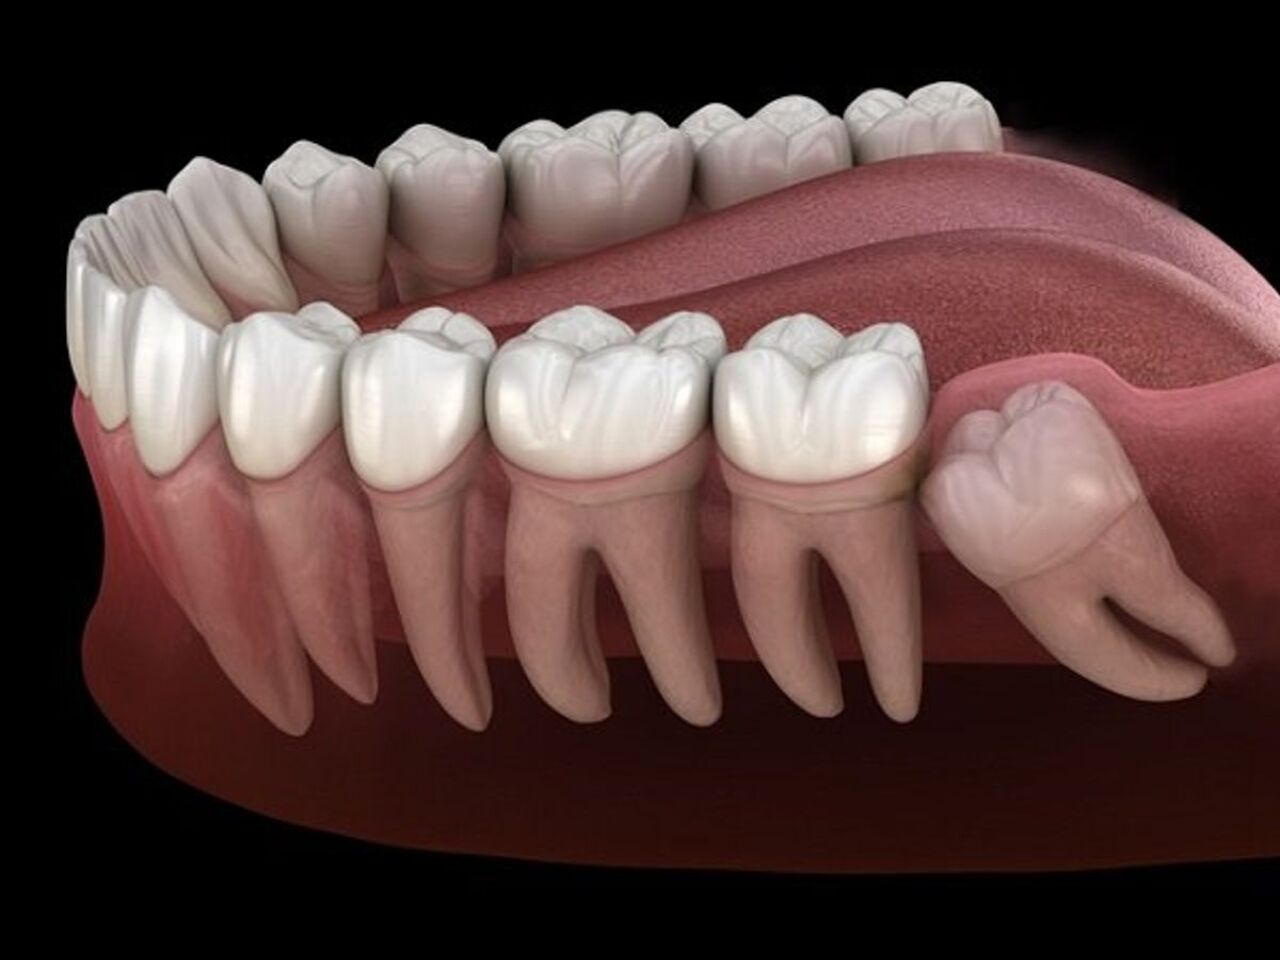 Quá trình mọc răng số 8 mọc ngầm kéo dài bao lâu?
